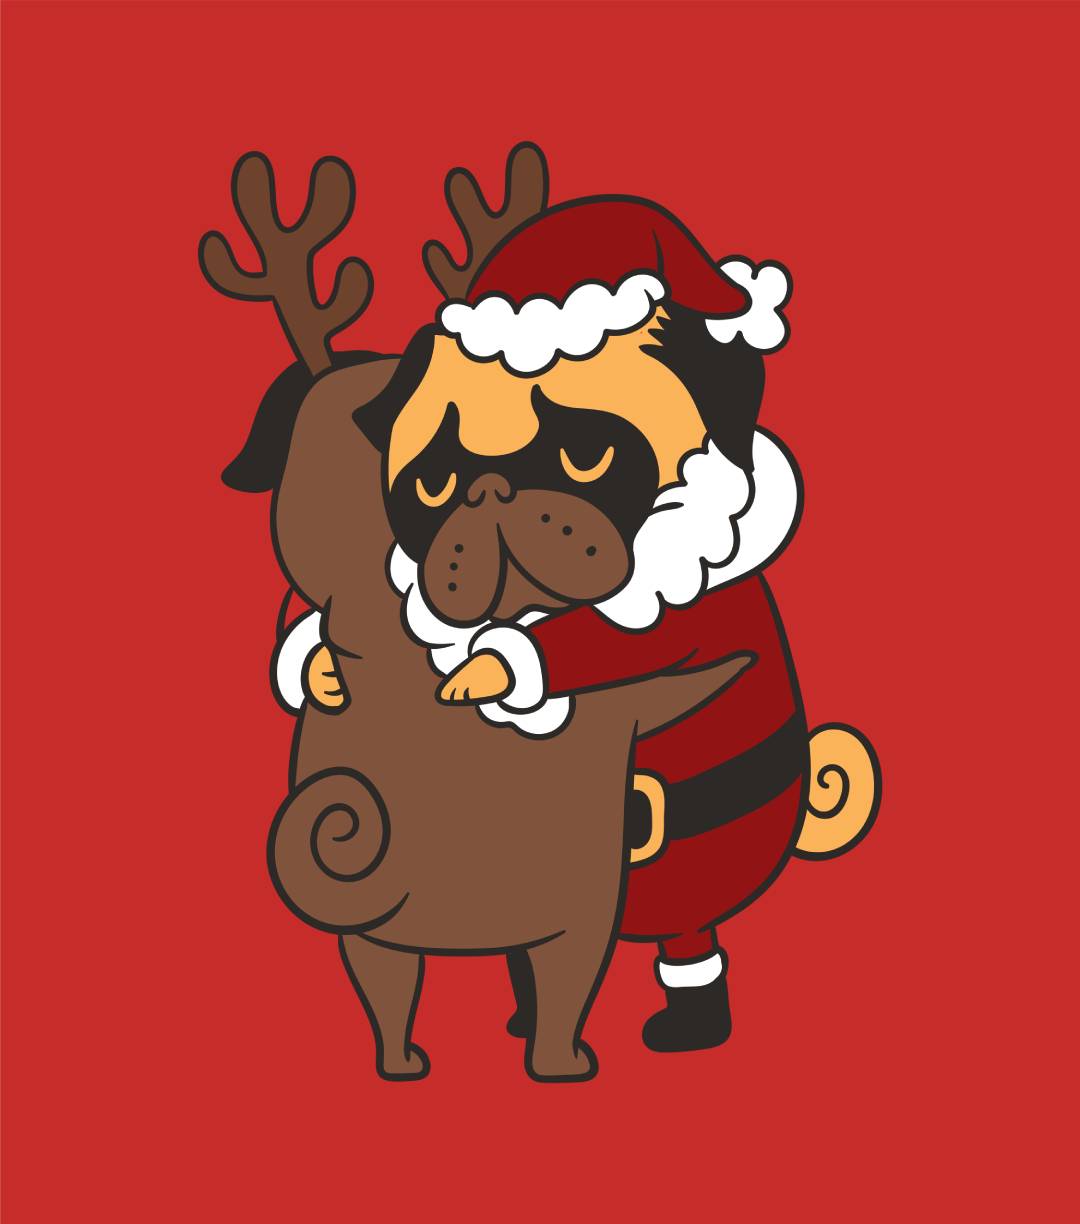 Pug Hugs Christmas T-Shirt